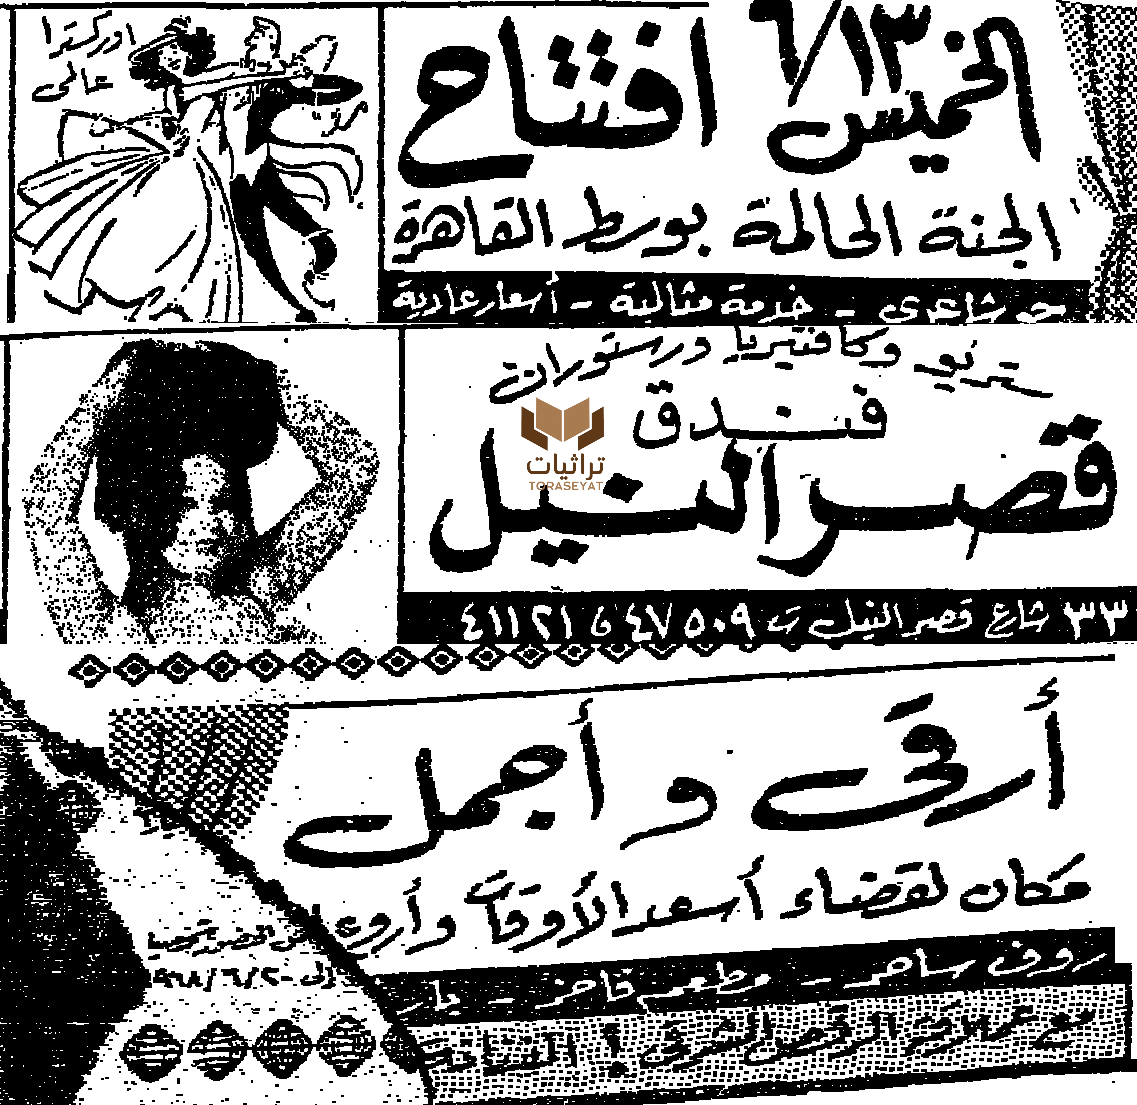 خبر موعد افتتاح ملهى ليلي ترقص فيه سهير زكي - يونيو 68